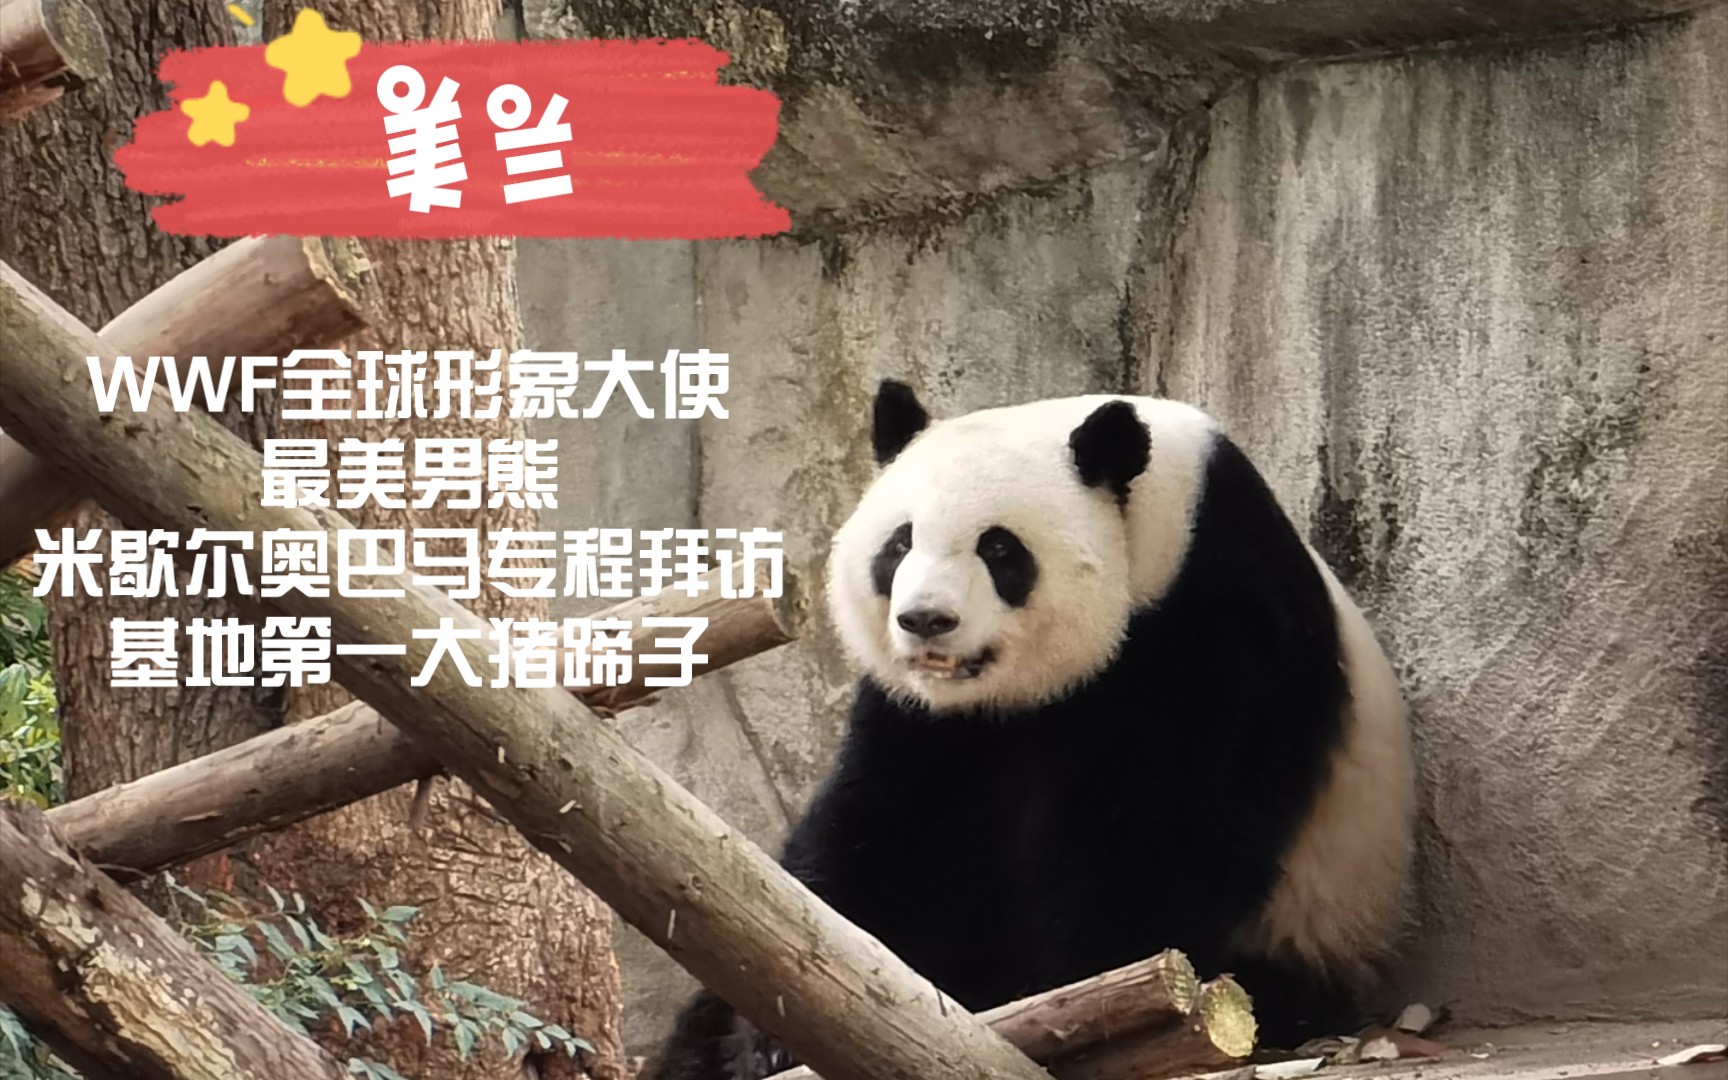 【大熊猫美兰&奇福】大猪蹄子美兰和怀着福多多的辣妈奇福打情骂俏。（2021年春）